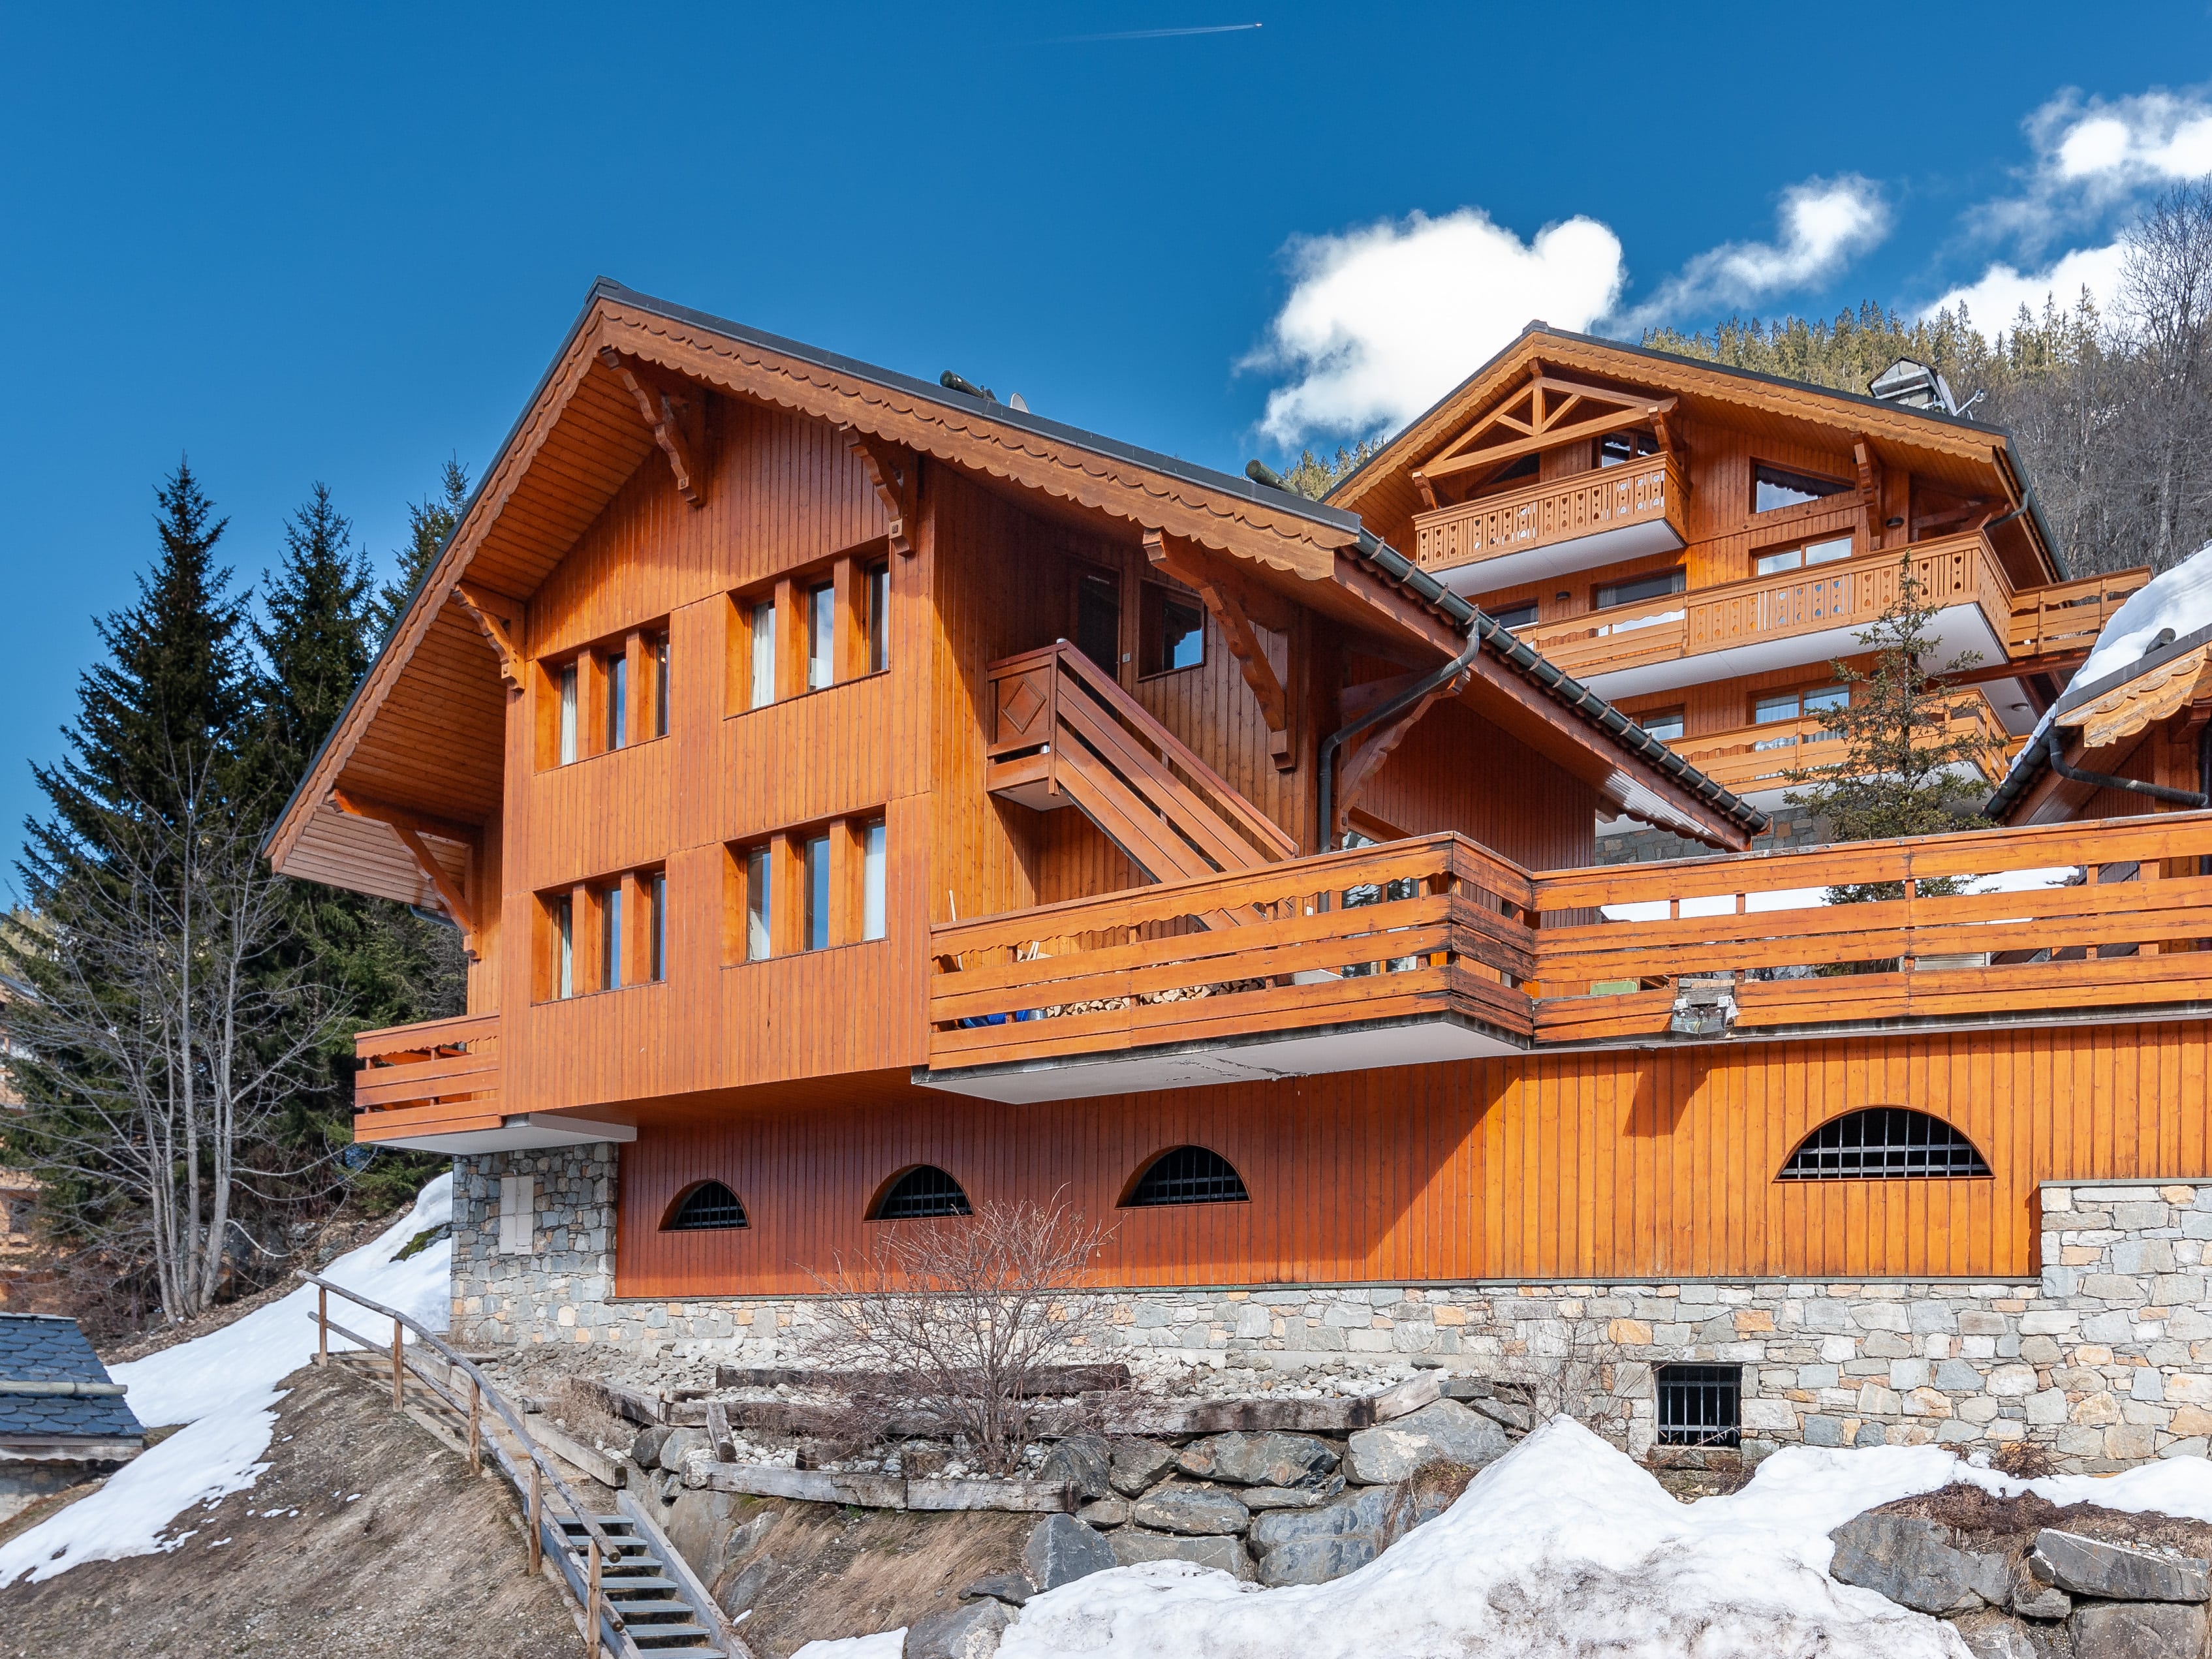 Chalet luxe vendu par Leggett Immobilier en Savoie dans les Alpes